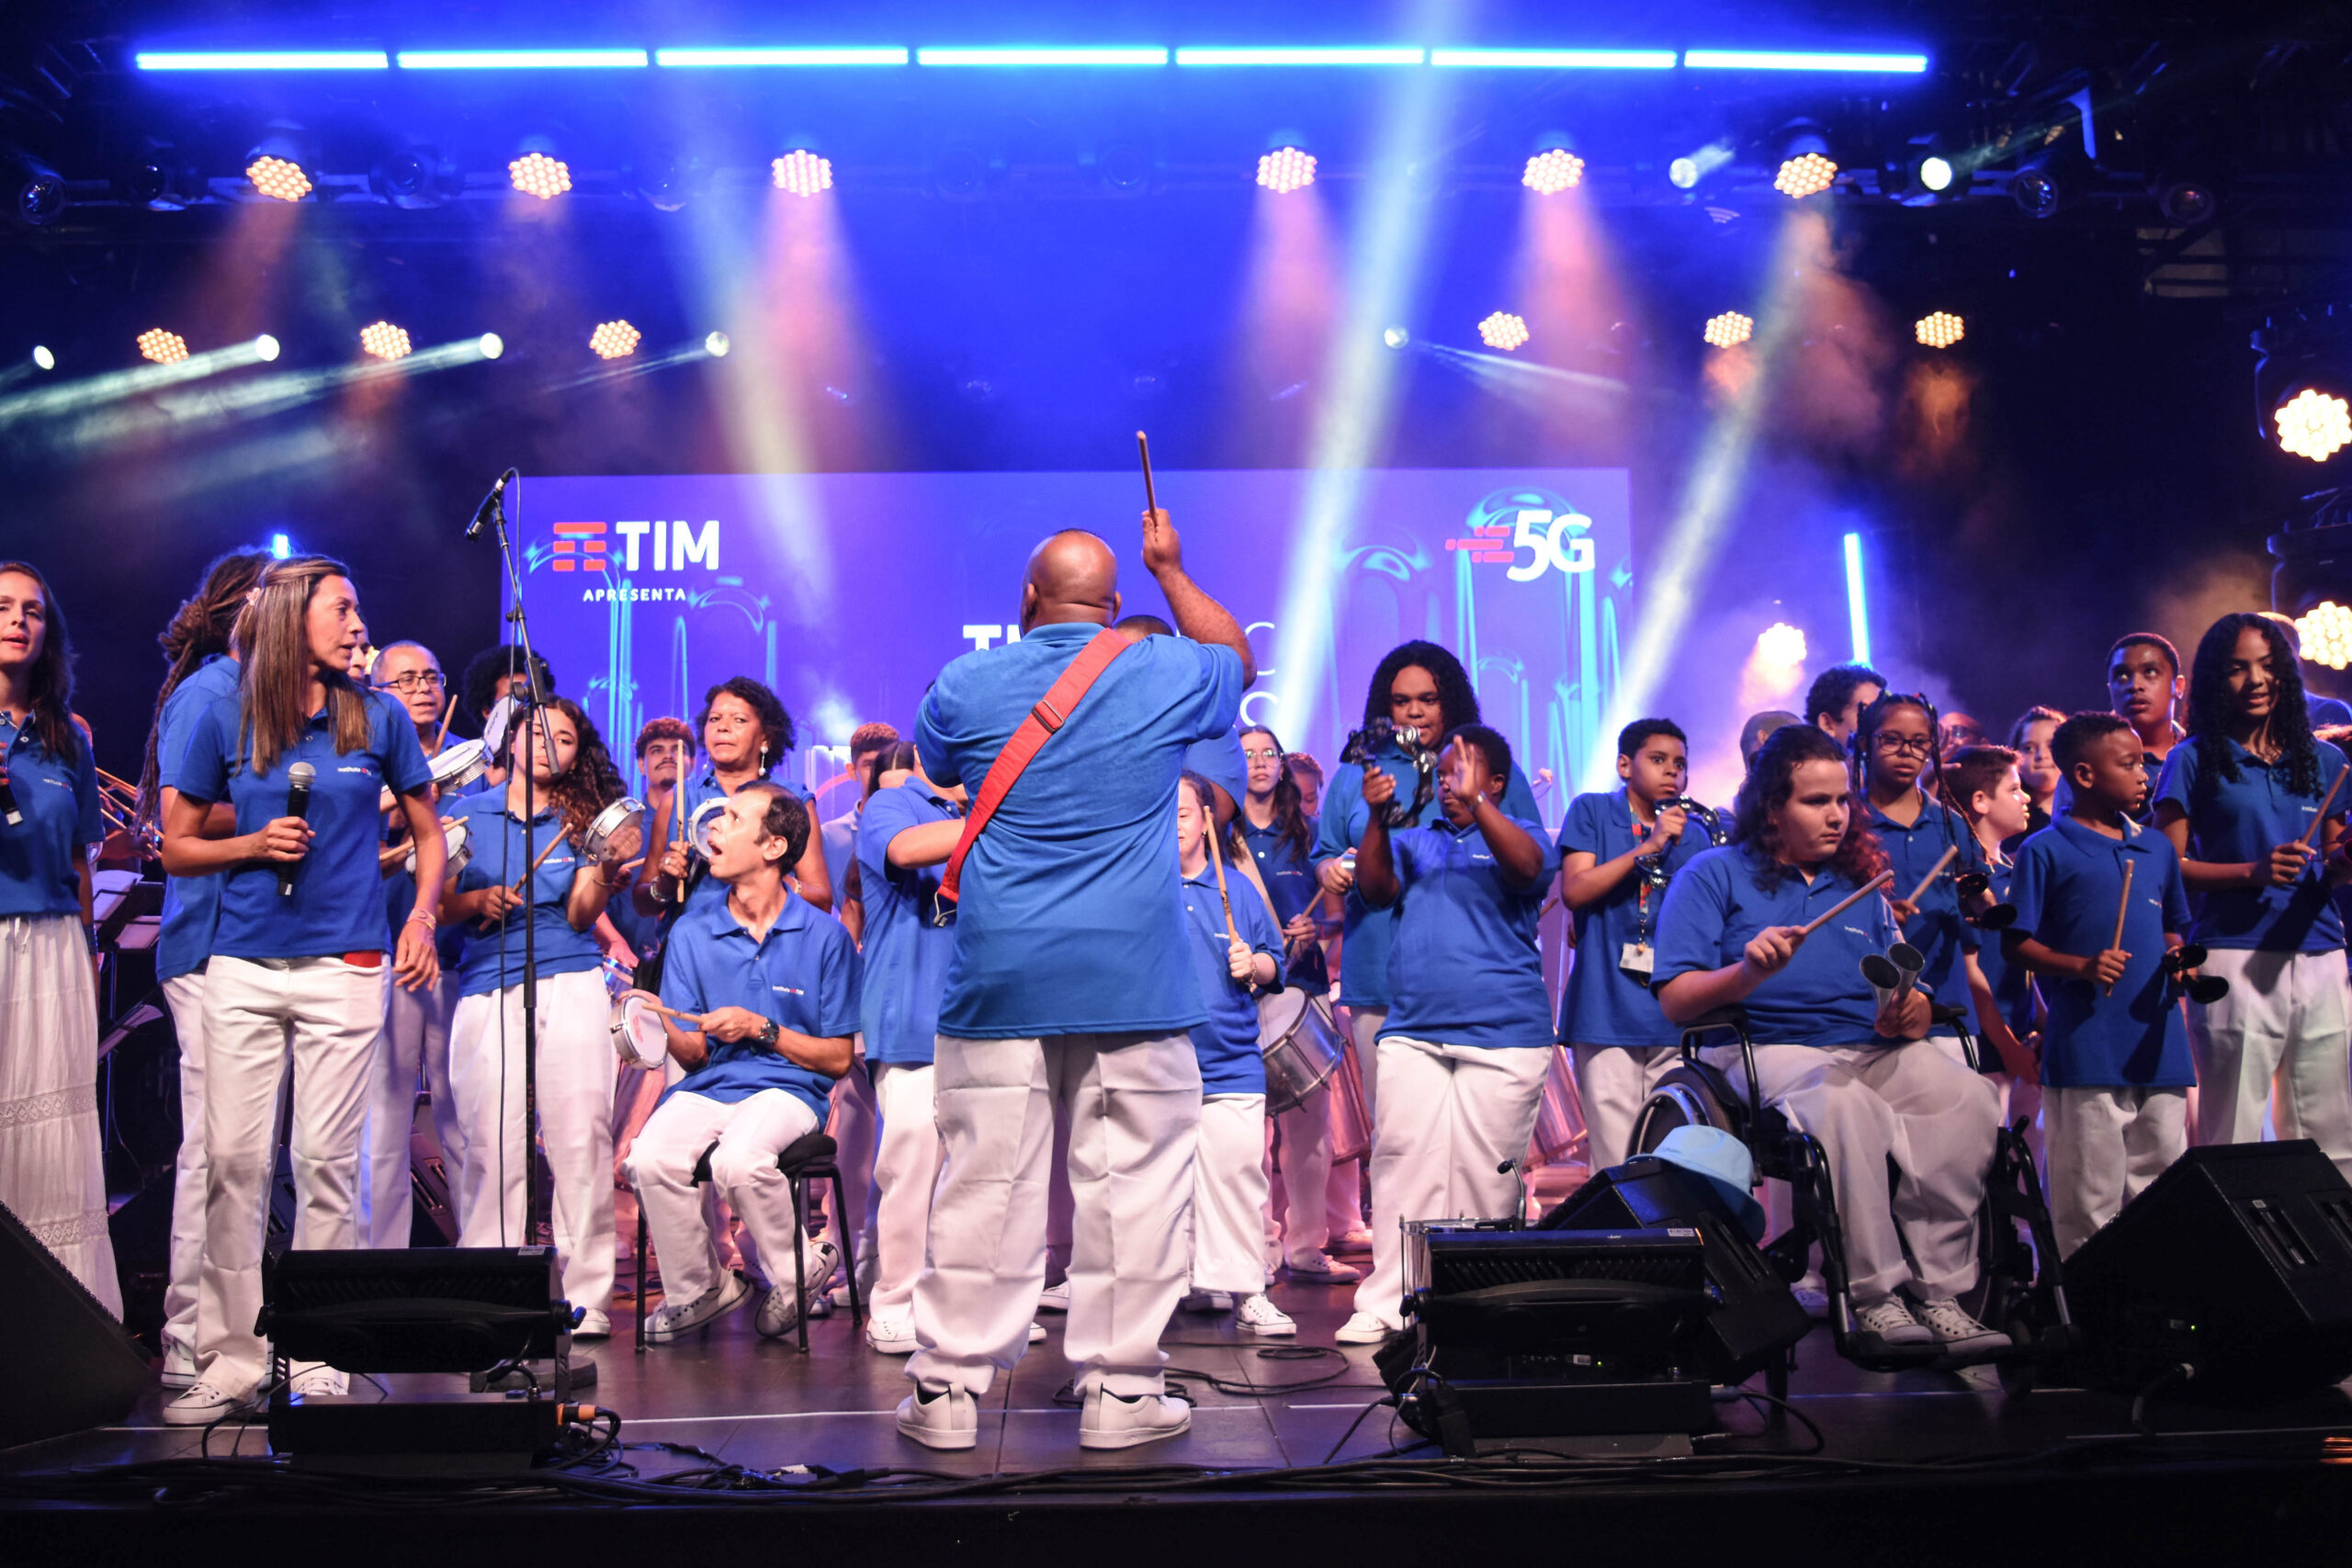 No Dia Nacional da Música e dos Músicos, a Bateria do Instituto TIM mostra que música também é inclusão